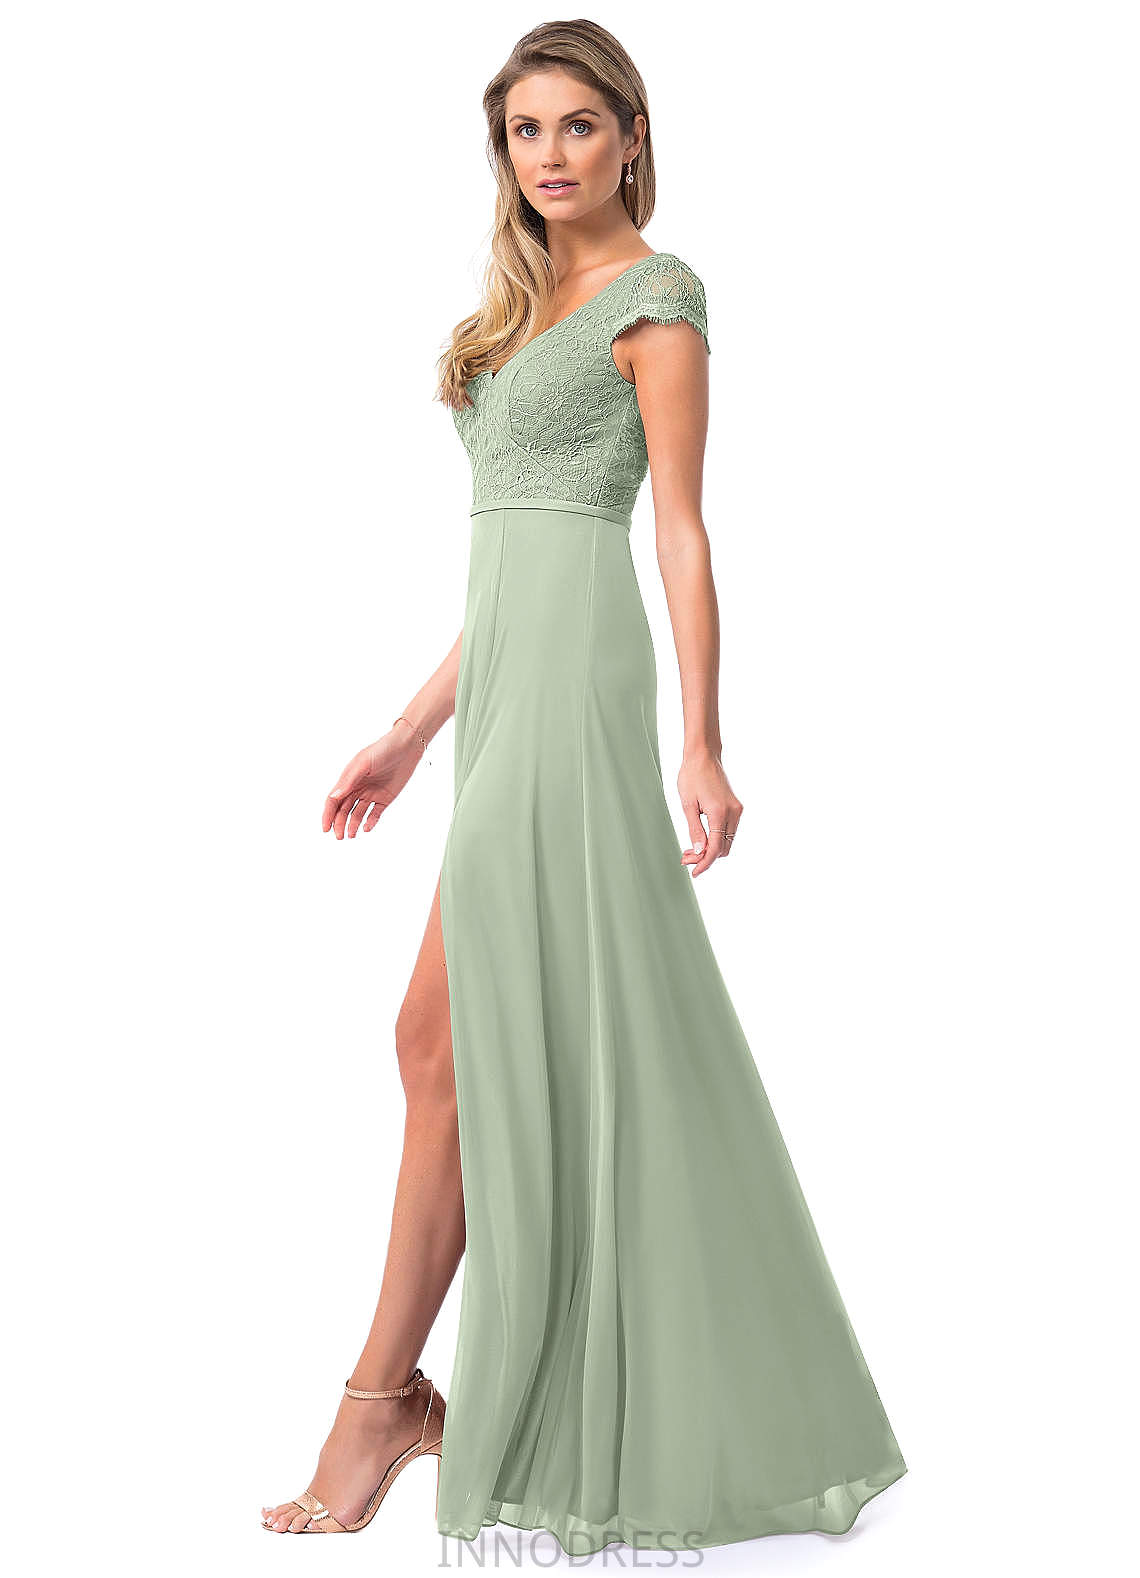 Trudie V-Neck Natural Waist A-Line/Princess Sleeveless Floor Length Bridesmaid Dresses